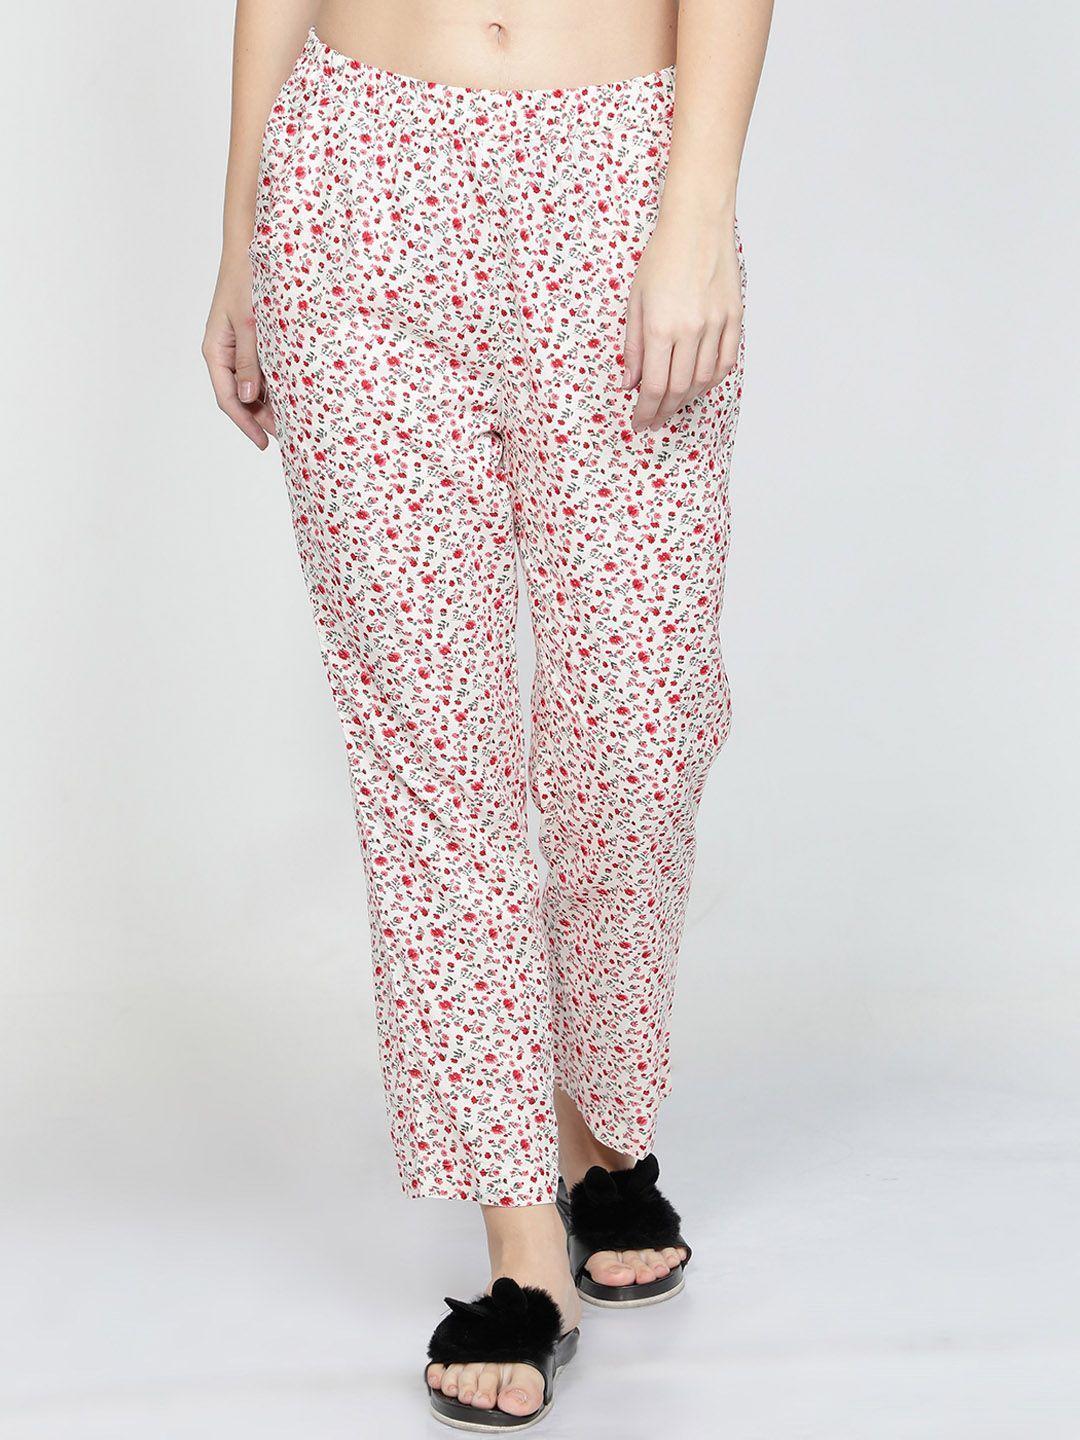 nuevosdamas women floral printed pyjama